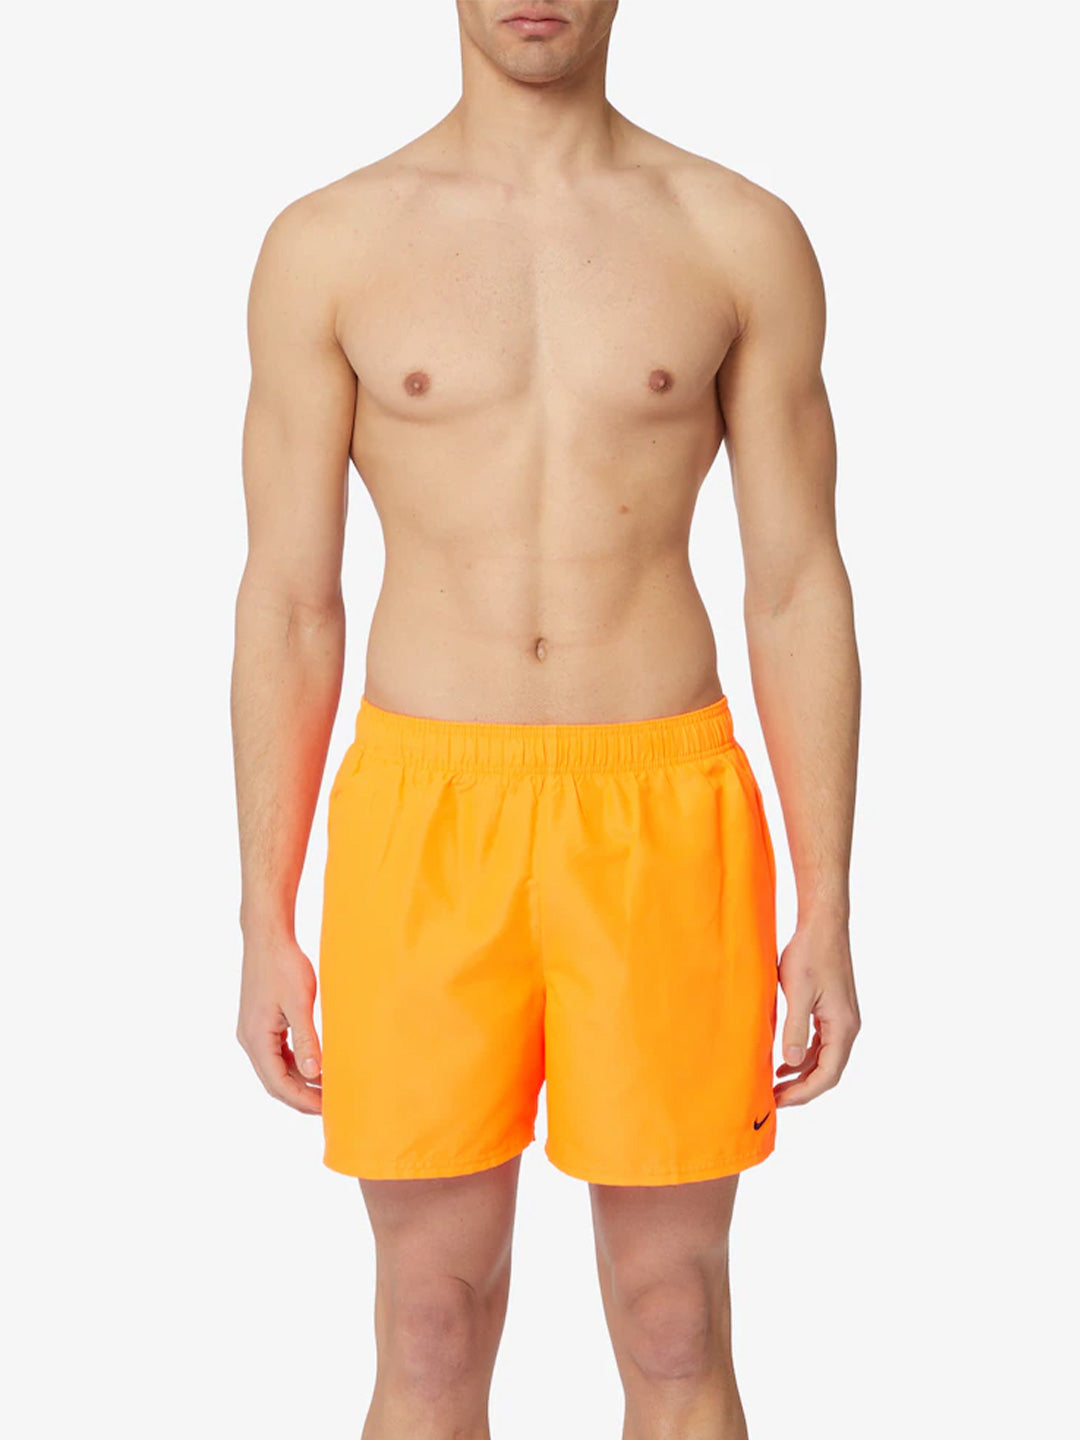 Nike orange short swimsuit